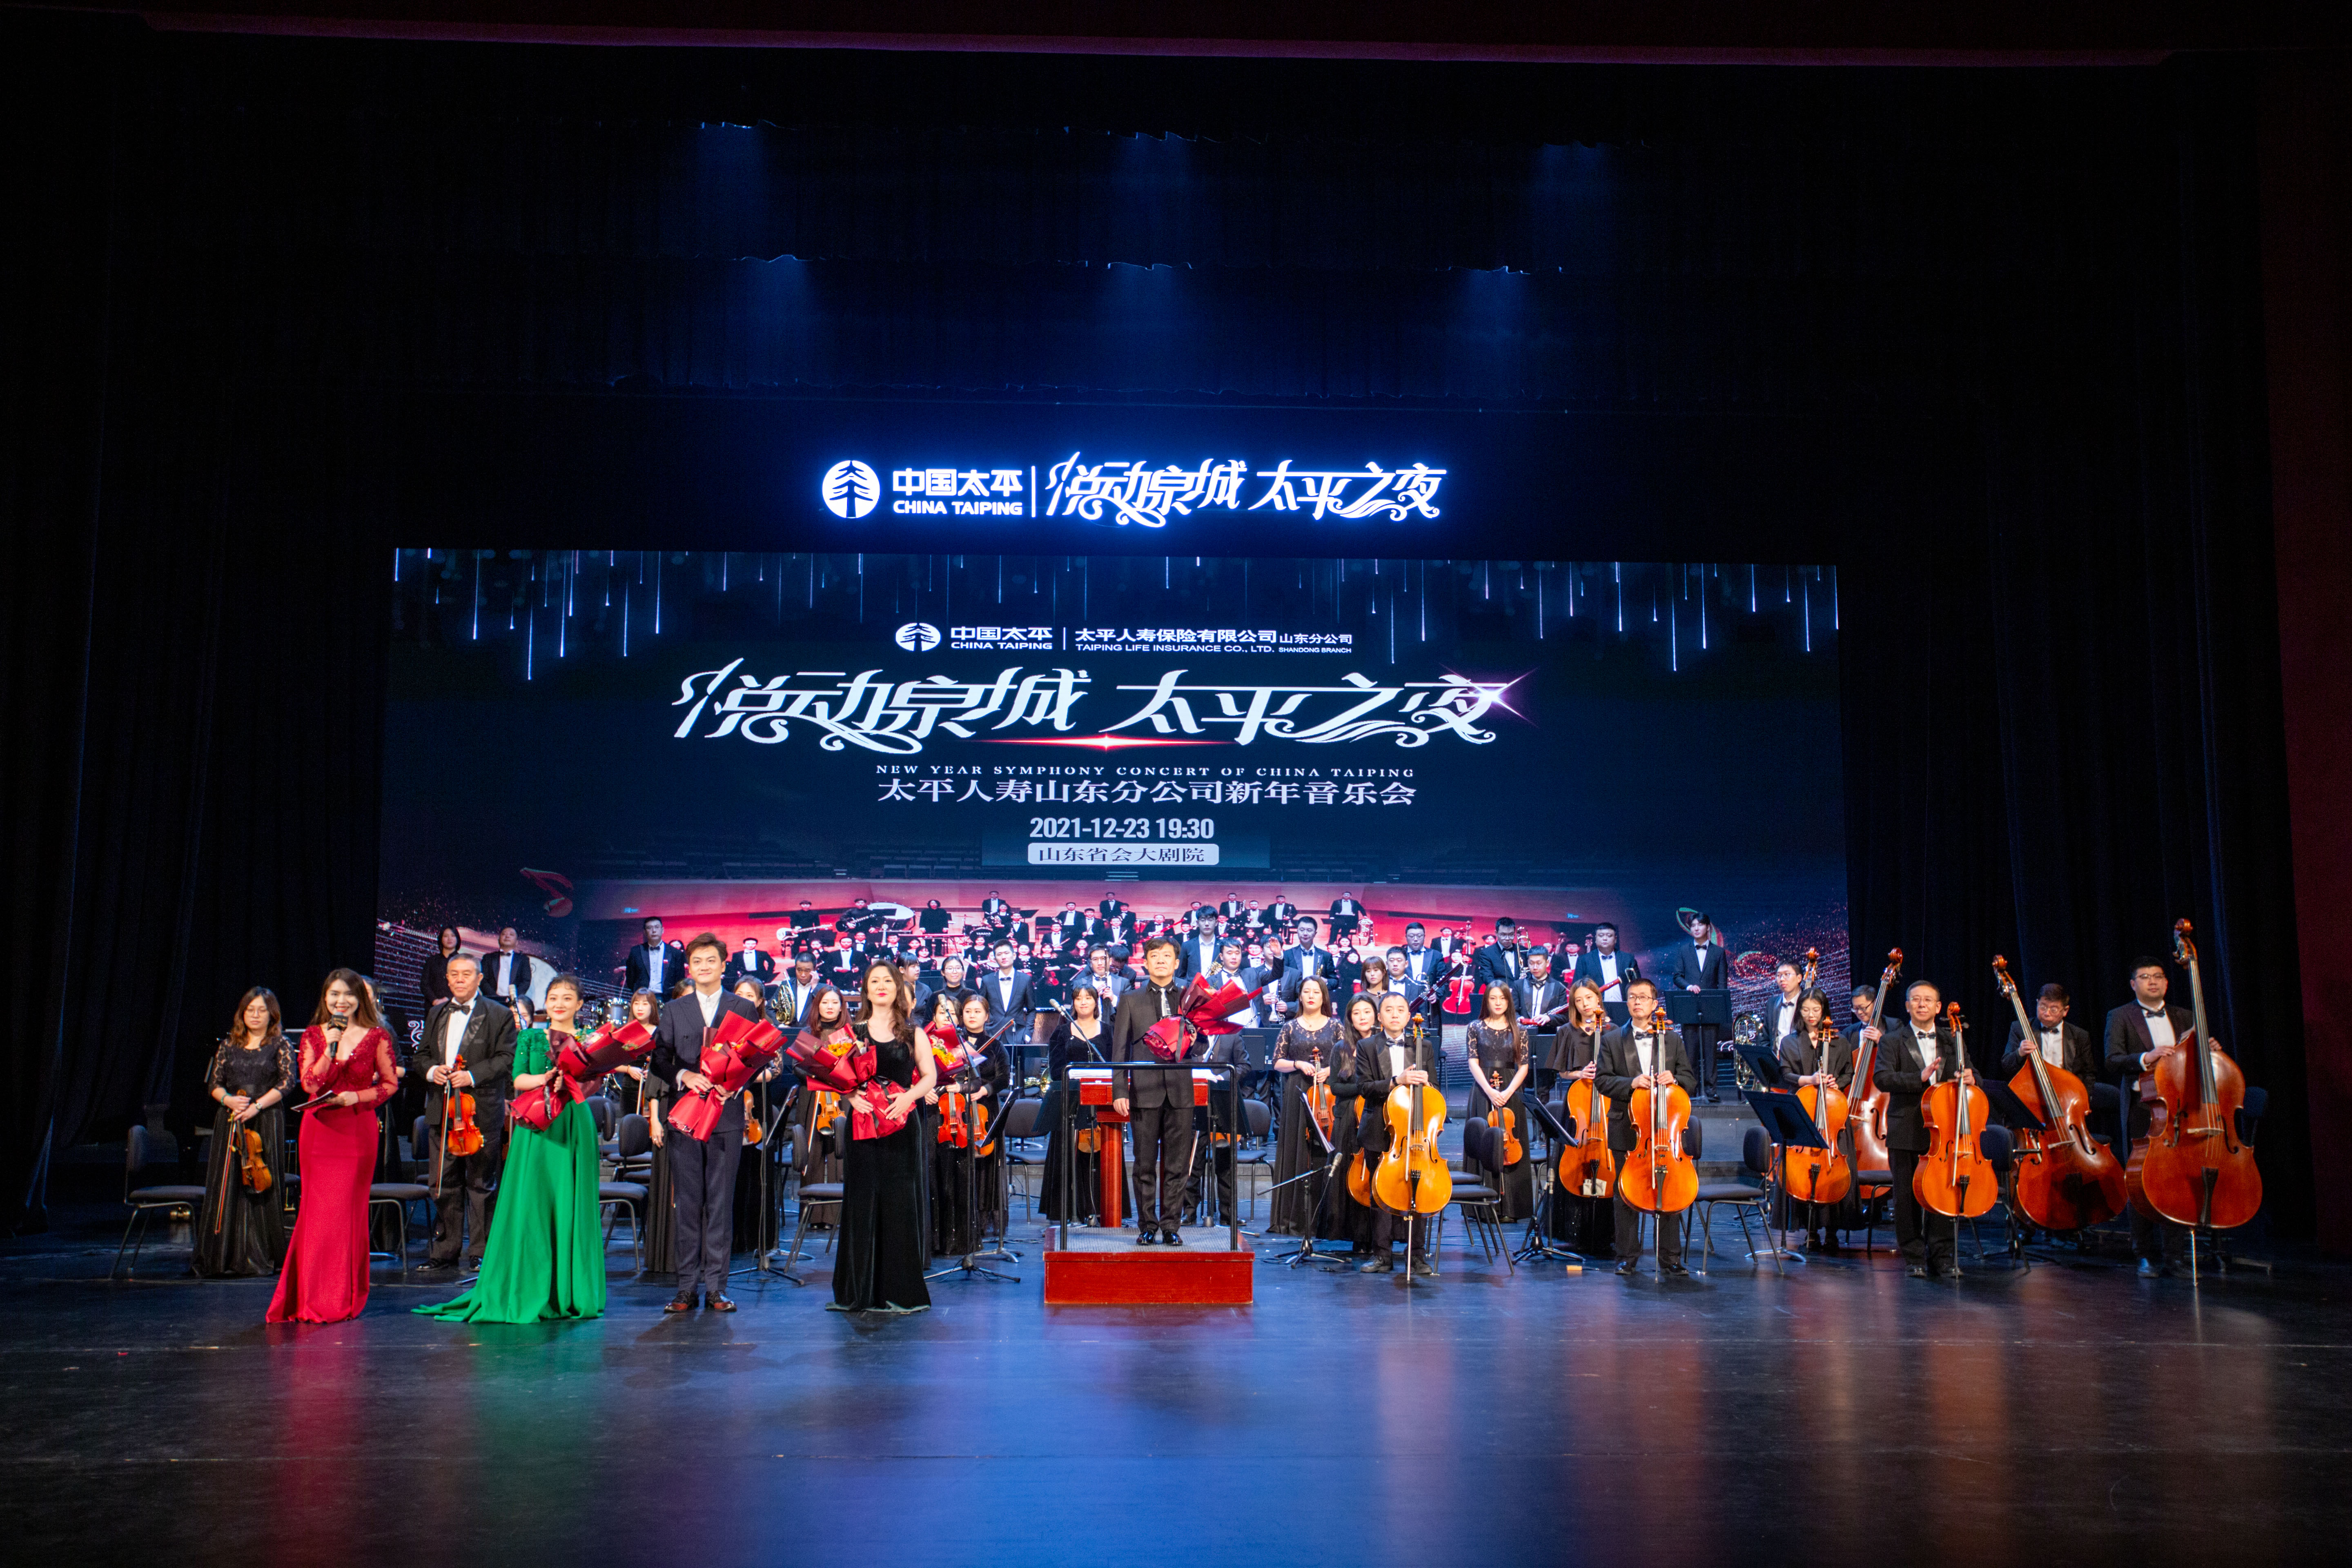 太平人寿山东分公司隆 重举办“悦动泉城·太平之夜”新年音乐会